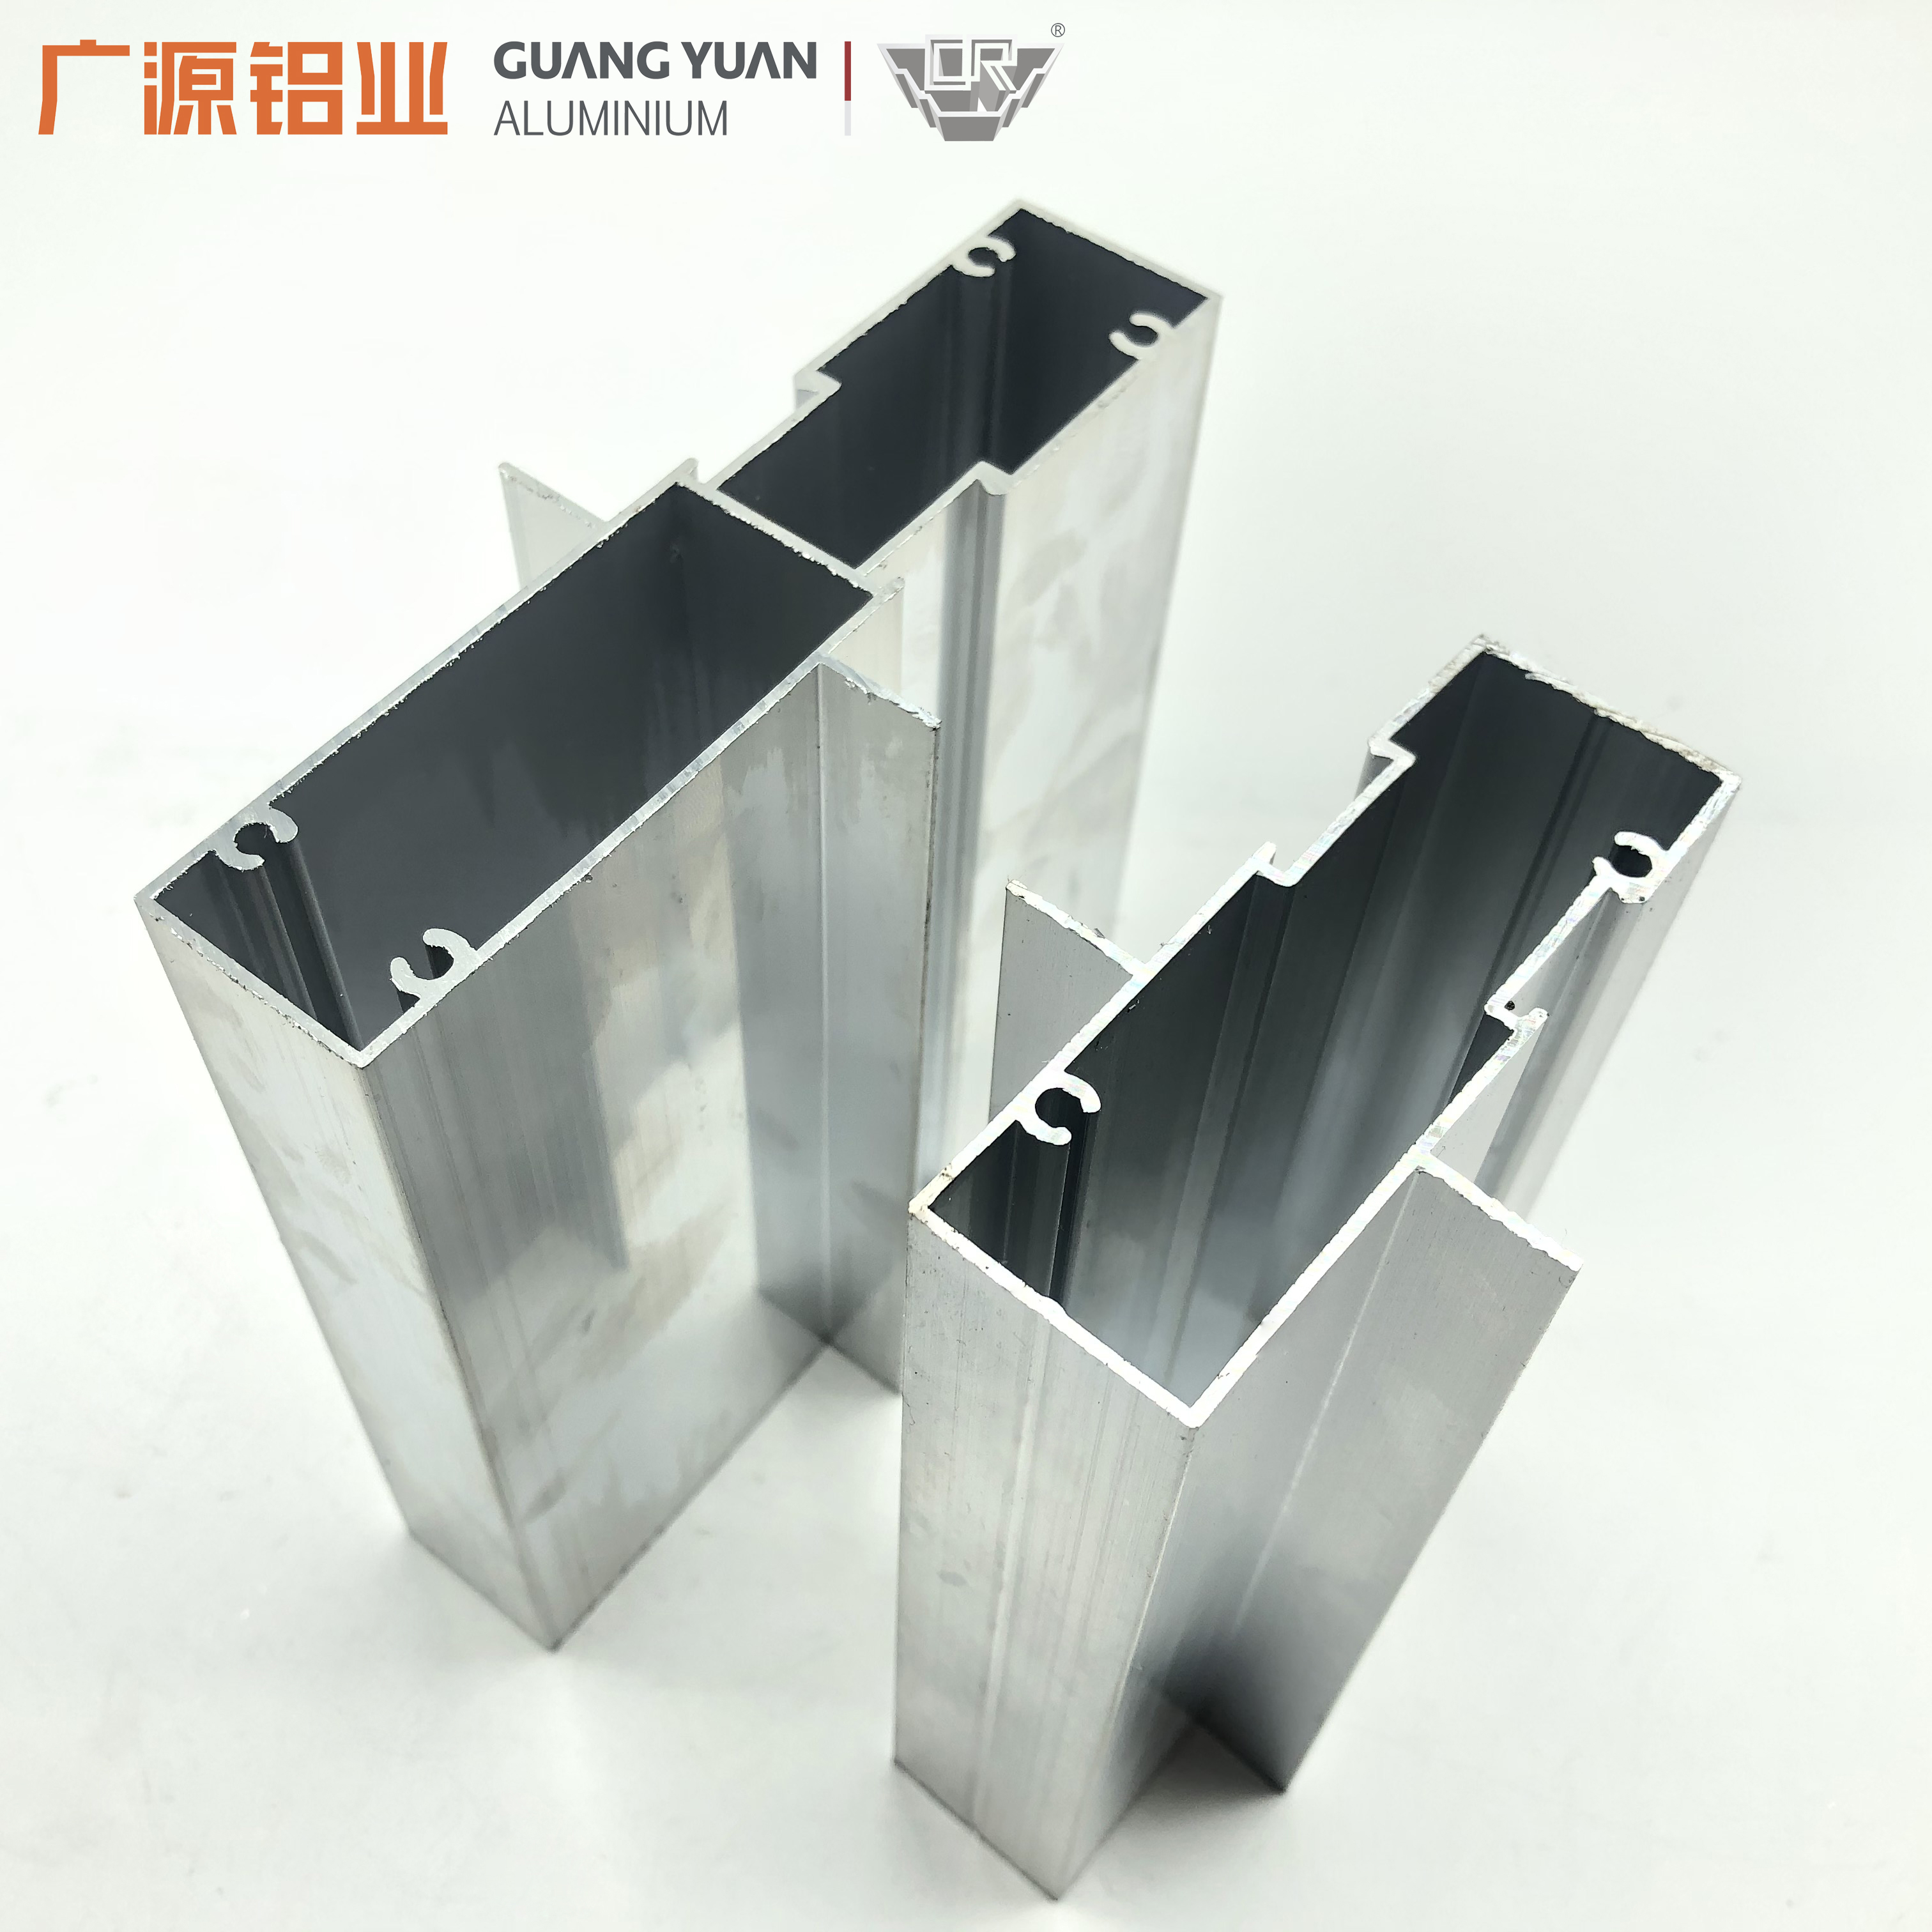 Aluminium sliding door profiles